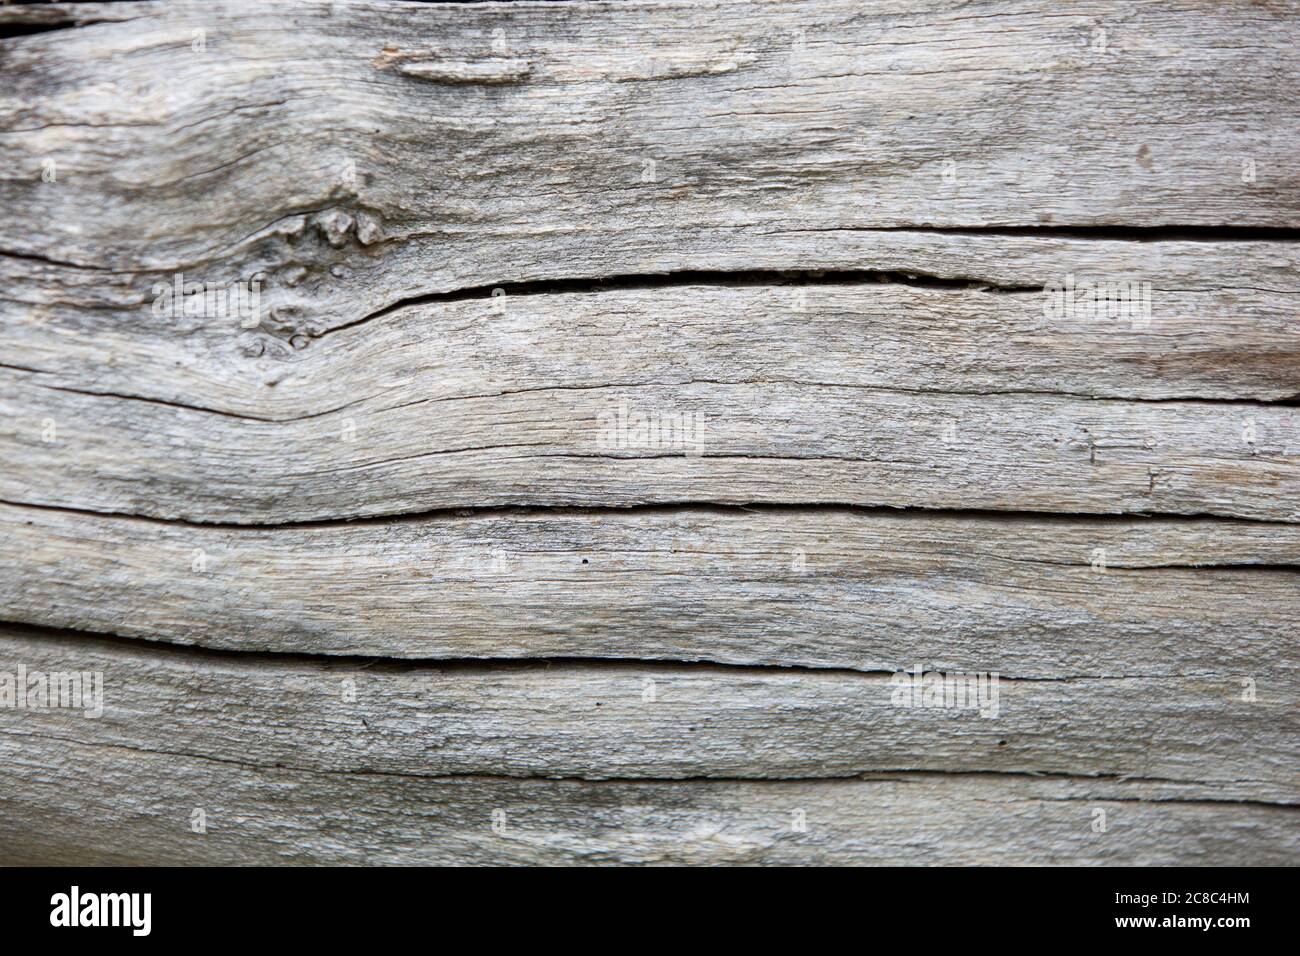 Close up of cracked wood background Stock Photo